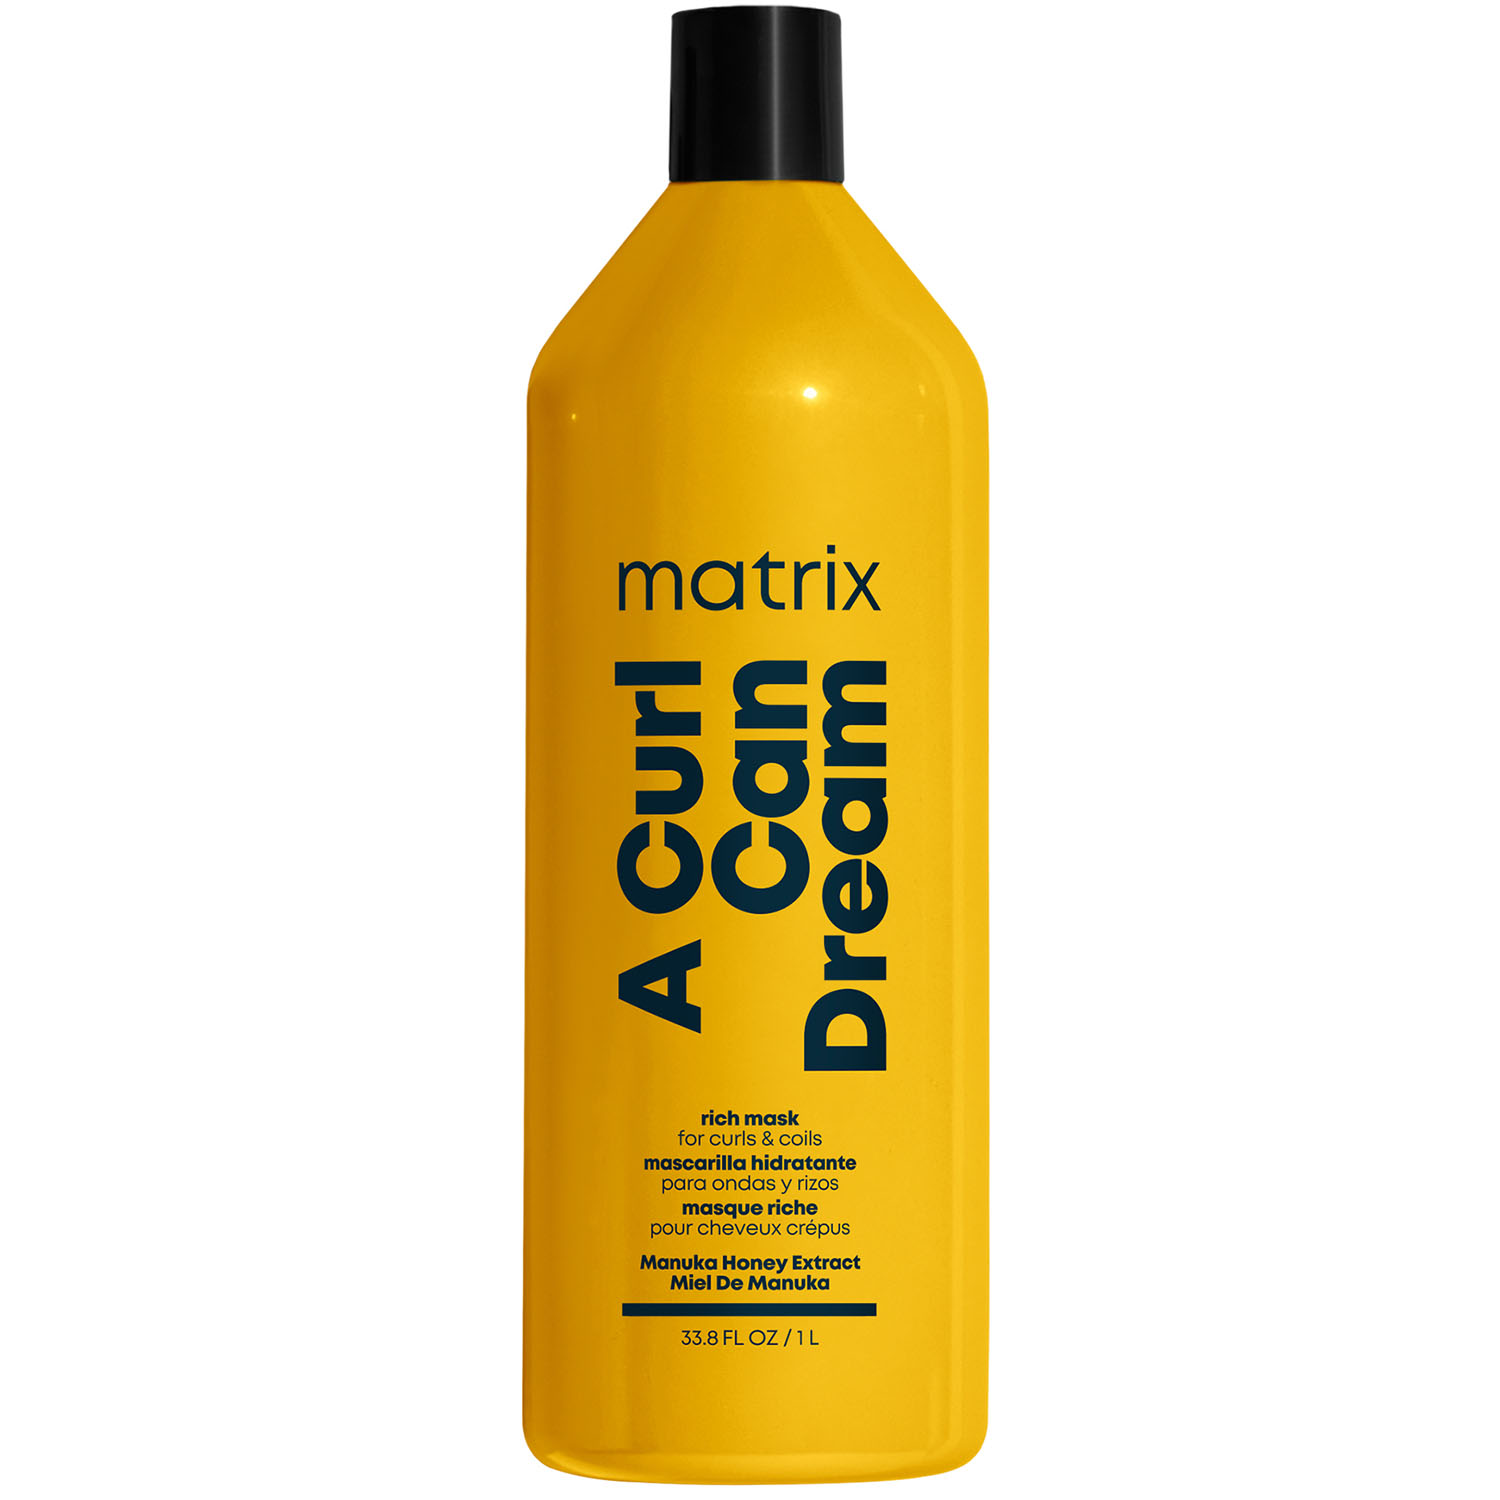 Matrix Маска с медом манука для интенсивного увлажнения кудрявых и вьющихся волос, 1000 мл (Matrix, Total results) шампунь для кудрявых волос matrix a curl can dream 300 мл